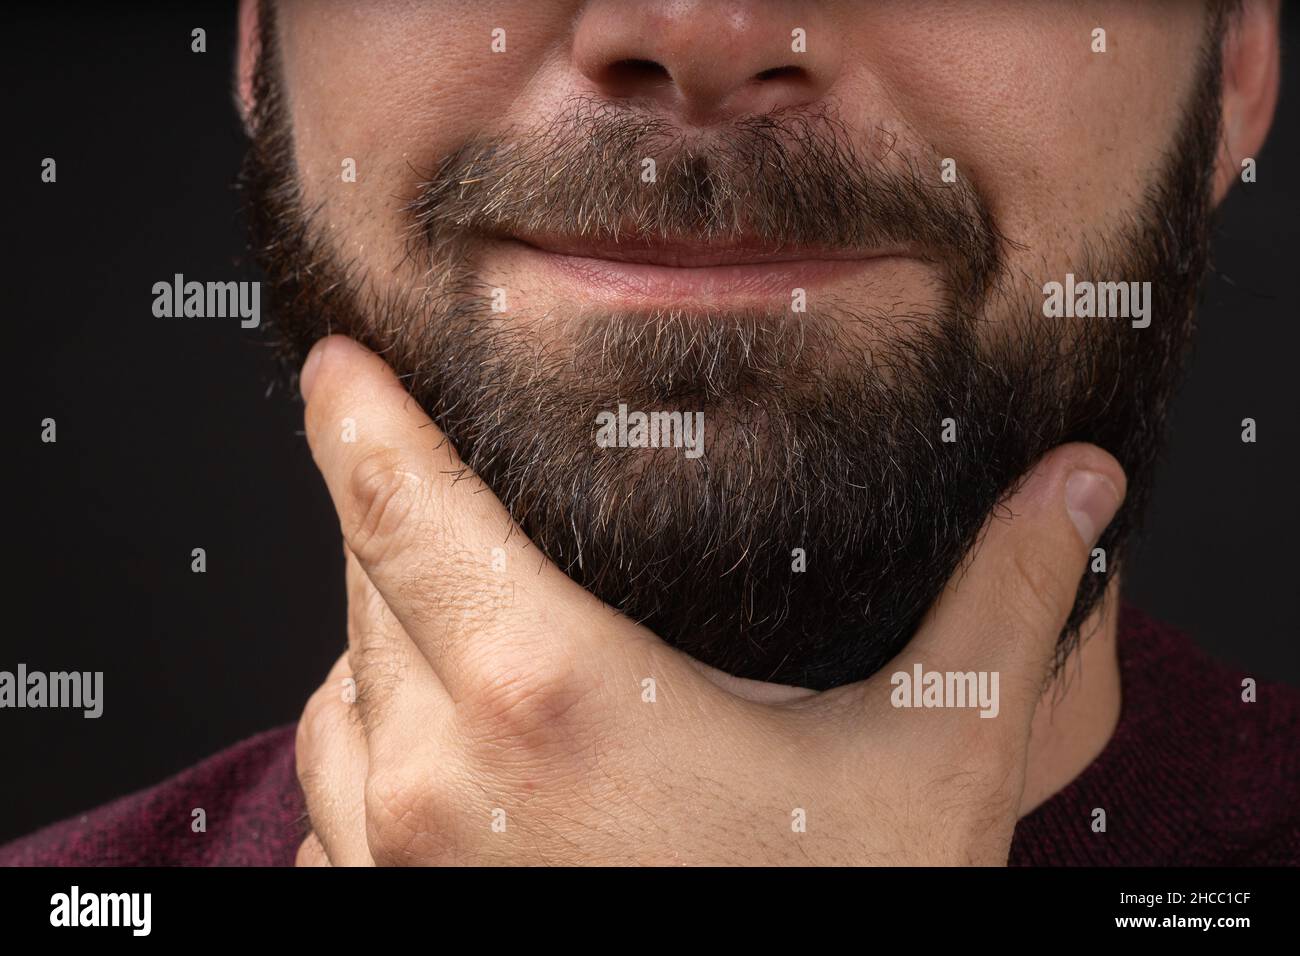 le jeune homme touche une barbe noire épaisse et nette, taillée, avec des procédures de soin de la peau et des cheveux main après main dans le salon de coiffure Banque D'Images